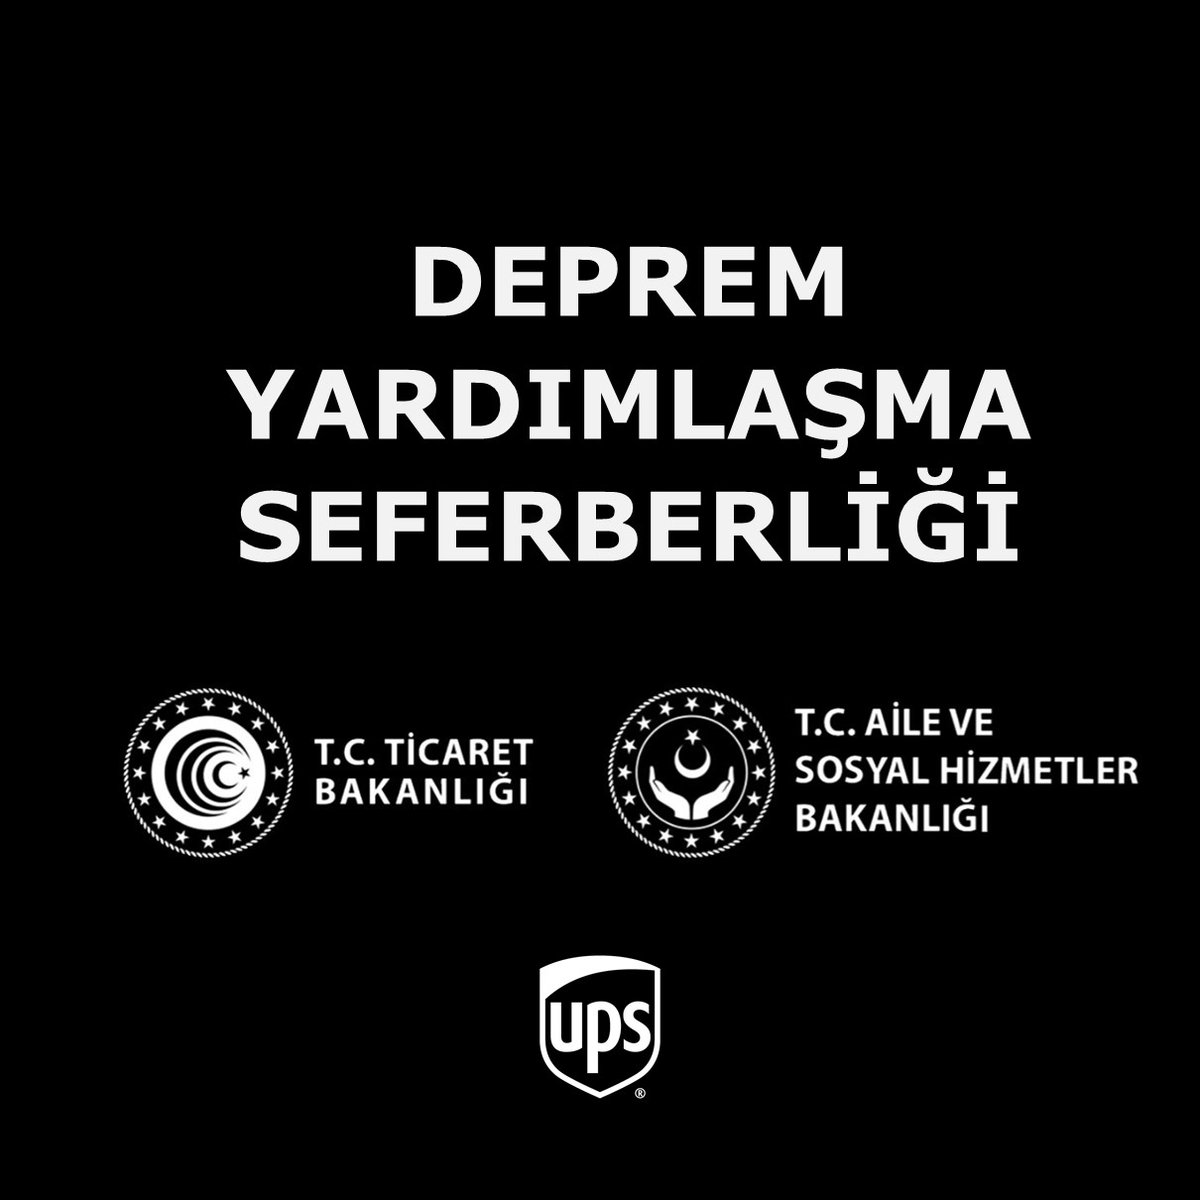 UPS Türkiye olarak, Ticaret Bakanlığımız himayesinde başlatılan 'Deprem Yardımlaşma Seferberliğine' biz de katılım sağlıyoruz. Aile ve Sosyal Politikalar Bakanlığımız ve AFAD’ın belirleyeceği teslimat noktalarına temel ihtiyaç malzemelerini teslim edeceğiz. #upstürkiye